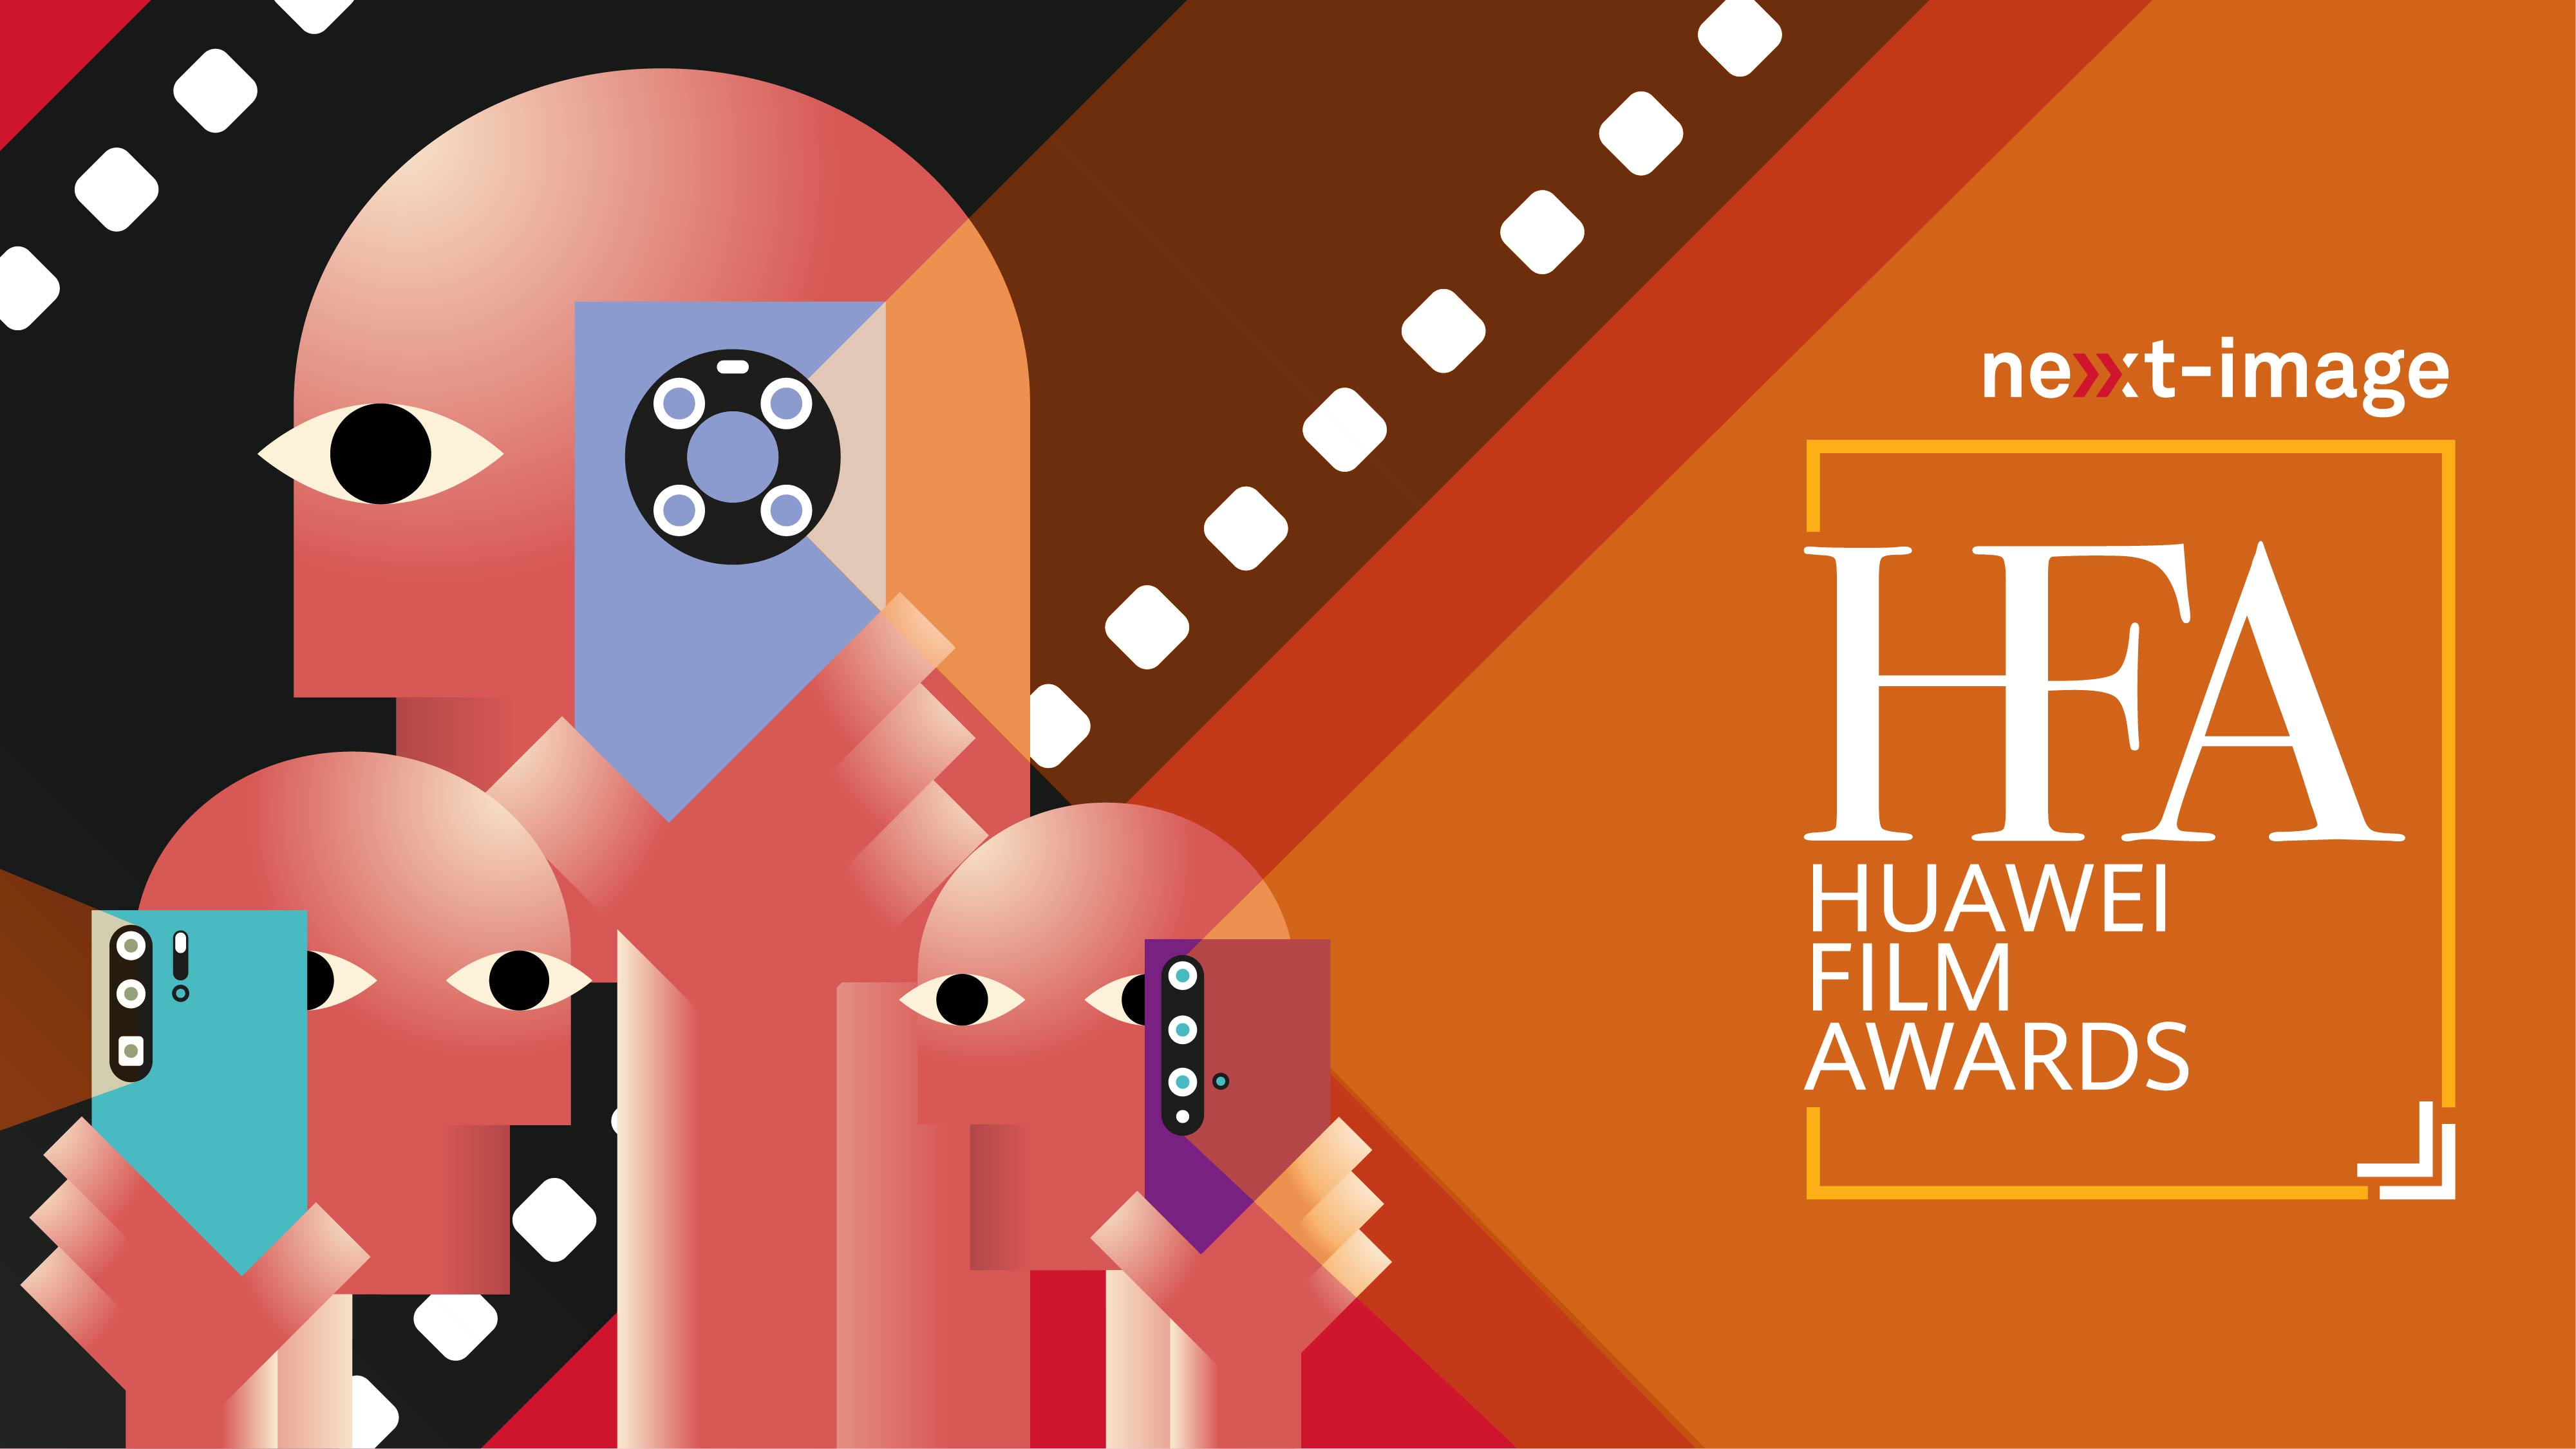 โค้งสุดท้ายกับการประกวดภาพยนตร์สั้นโชว์ผลงานระดับภูมิภาค กับ HUAWEI Film Awards 2020 ชิงรางวัลกว่า 300,000 บาท